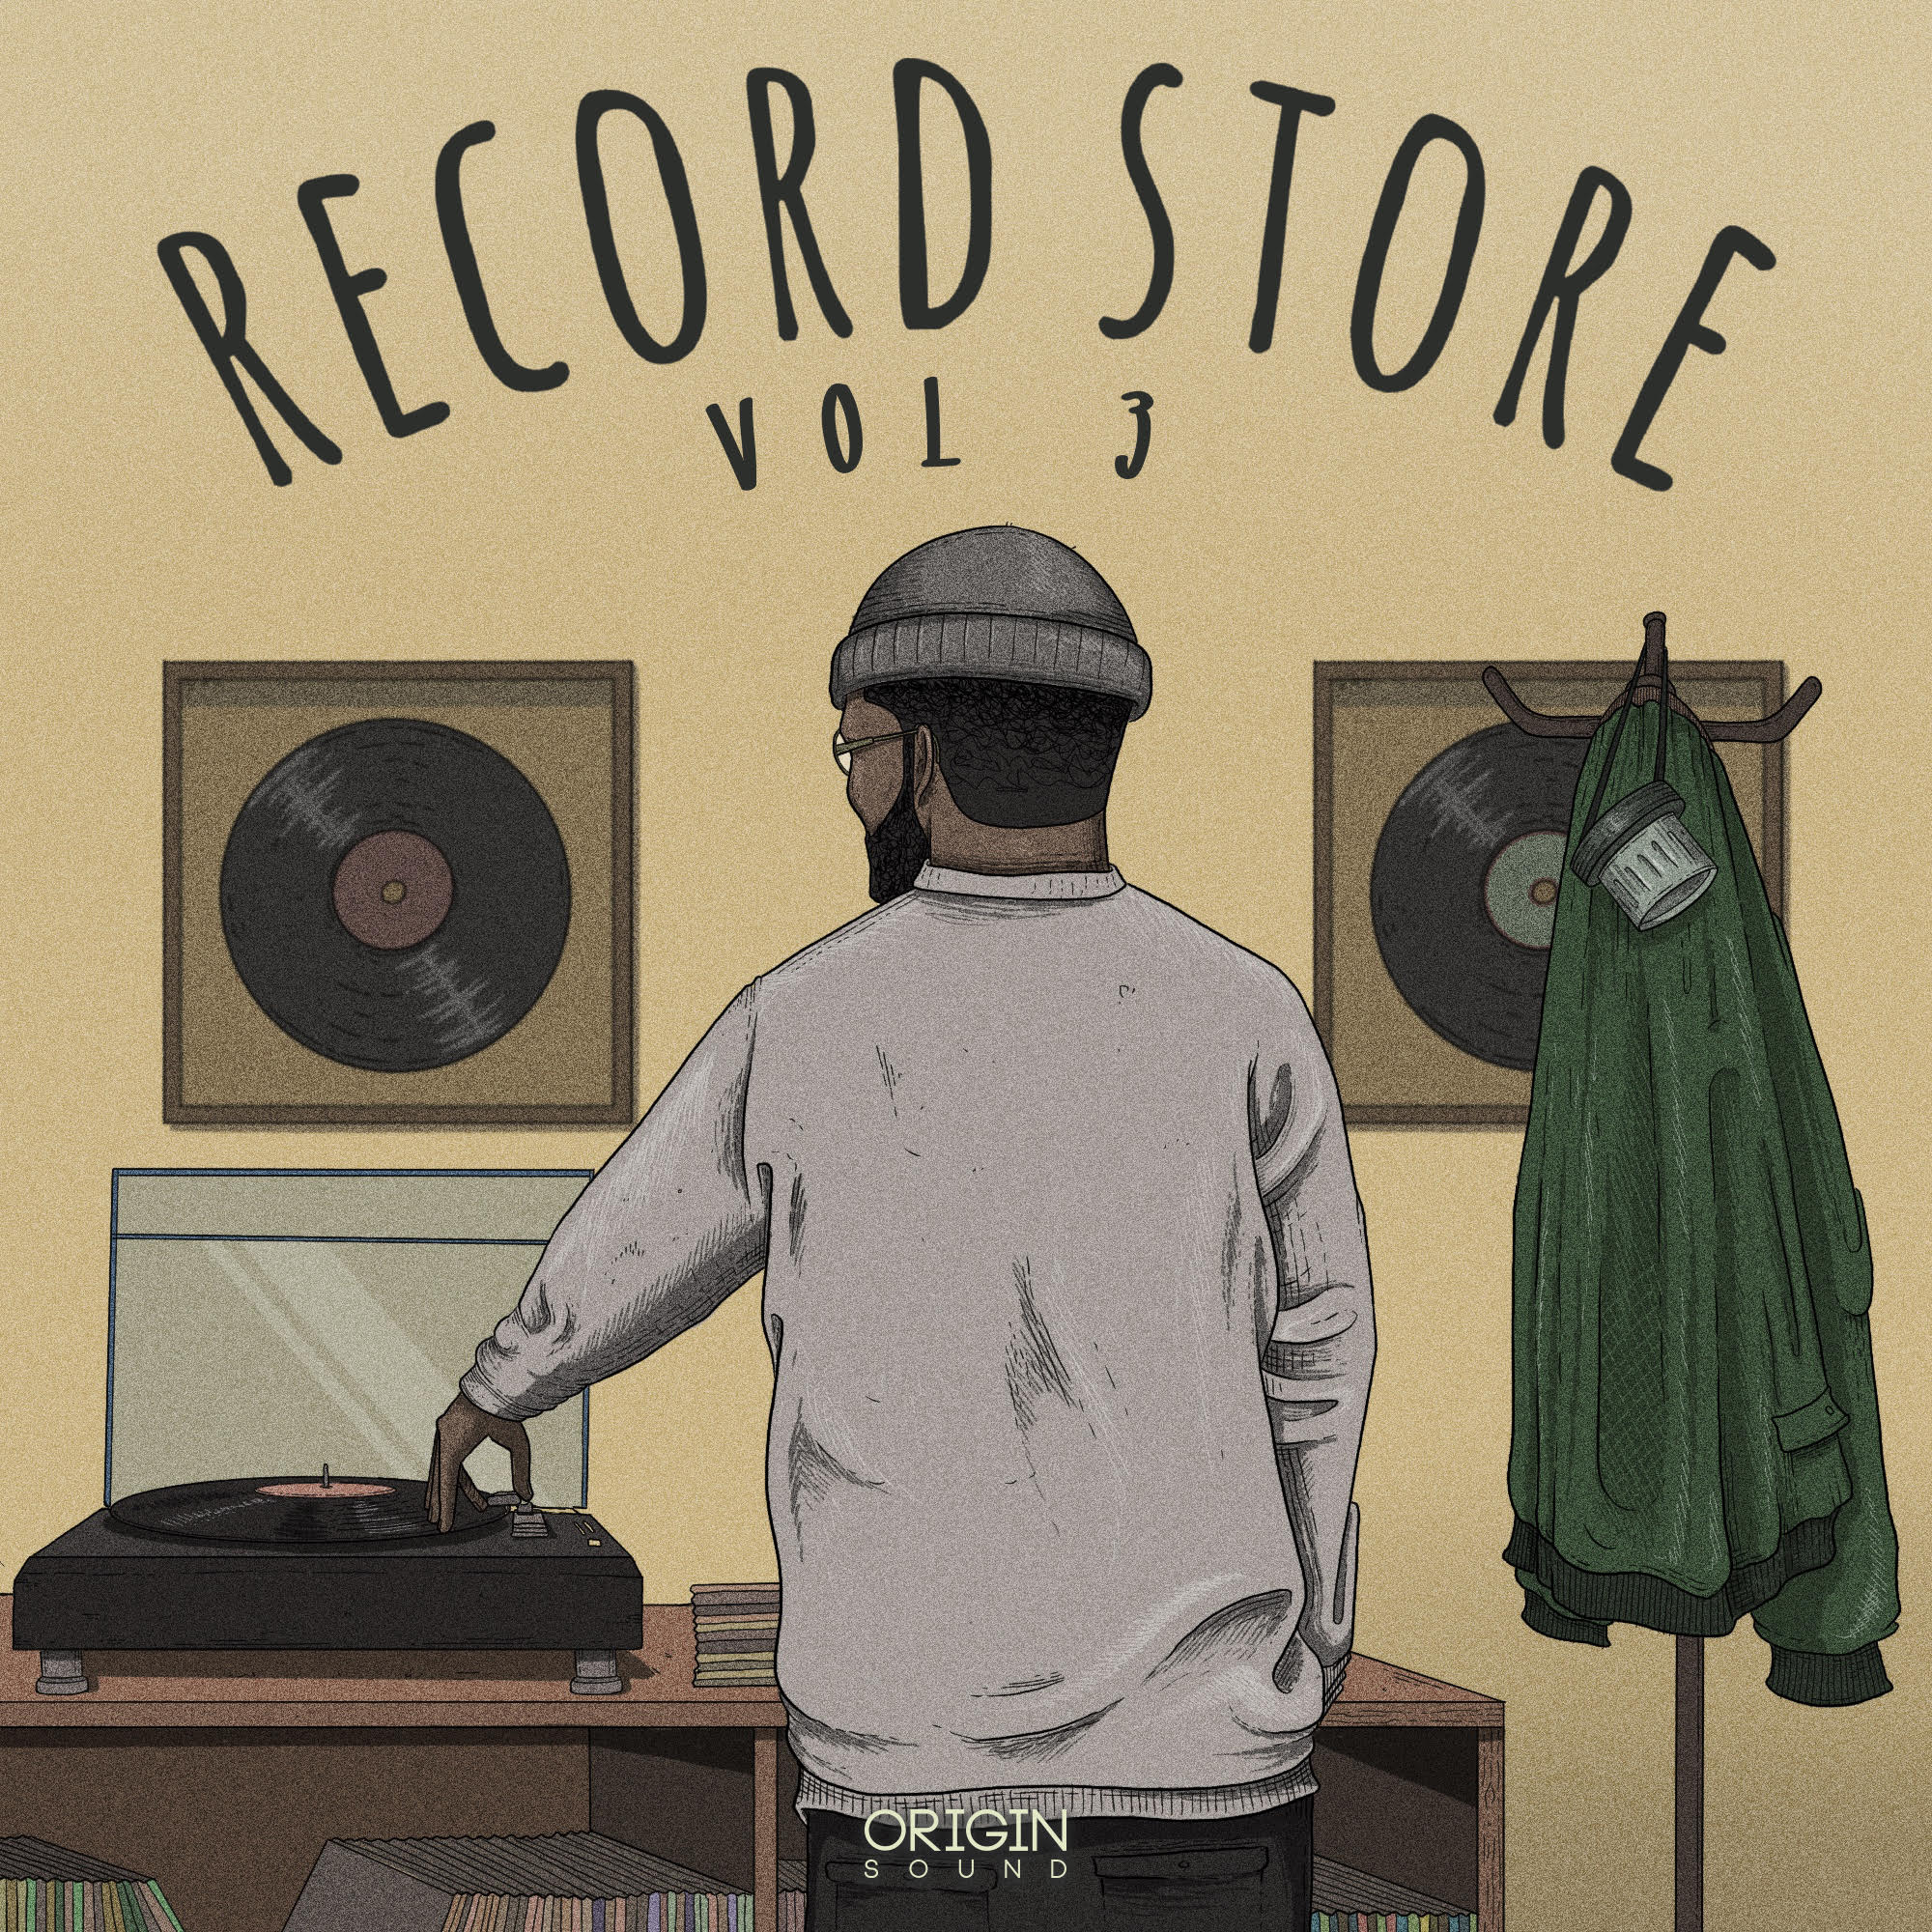 The Record Store - Vol 3